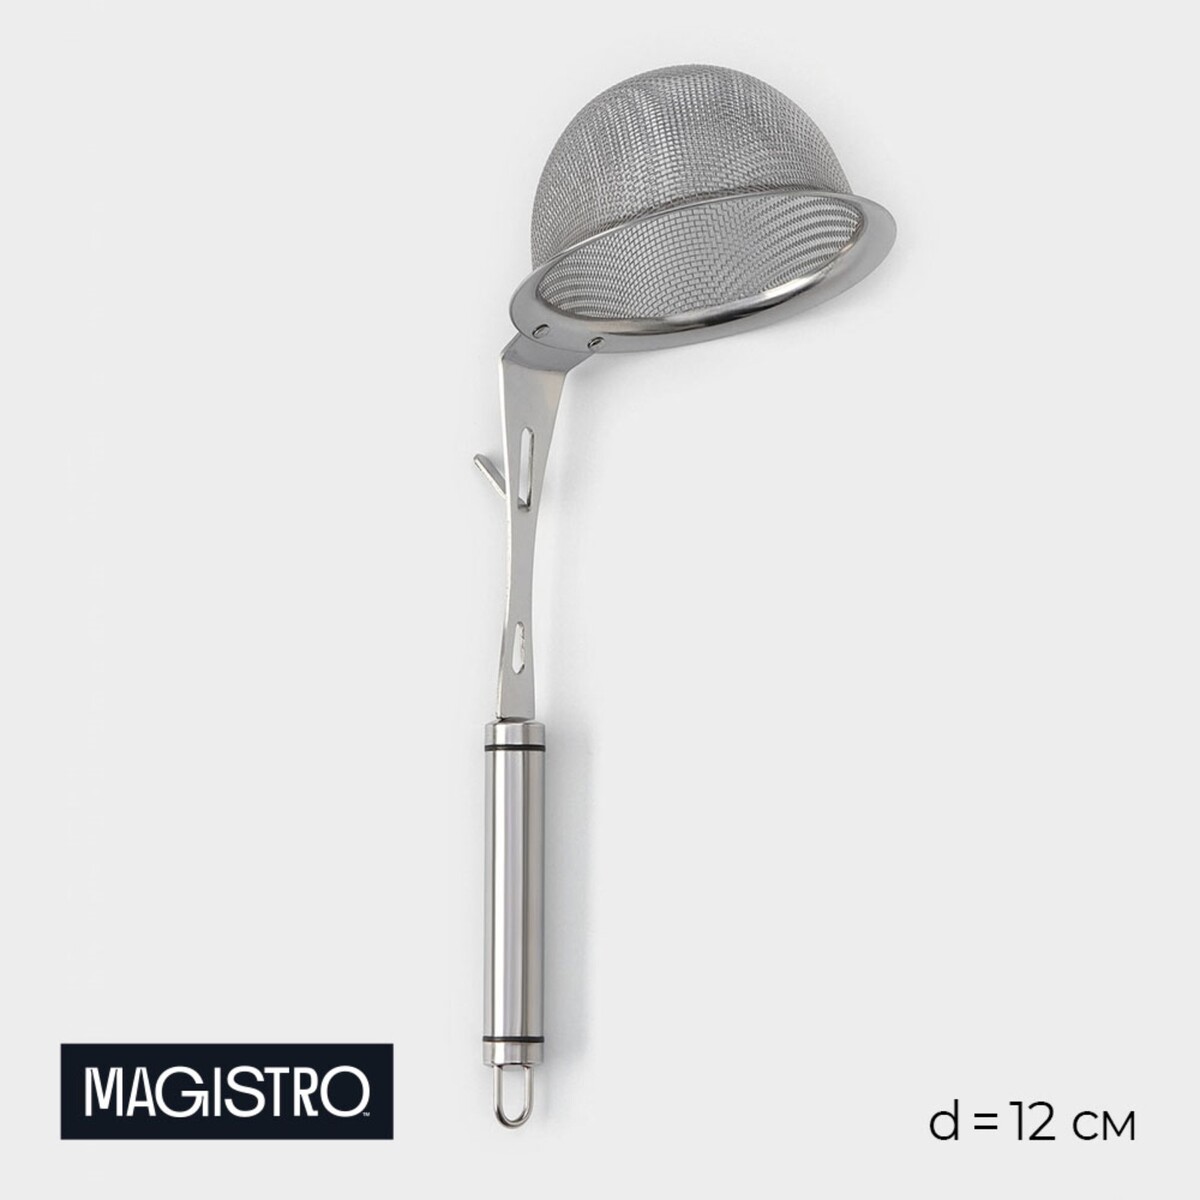 Сито - дуршлаг magistro arti, d=12 см, с фиксатором дуршлаг сито с деревянной ручкой 44см диаметр18см глубина 6 5см